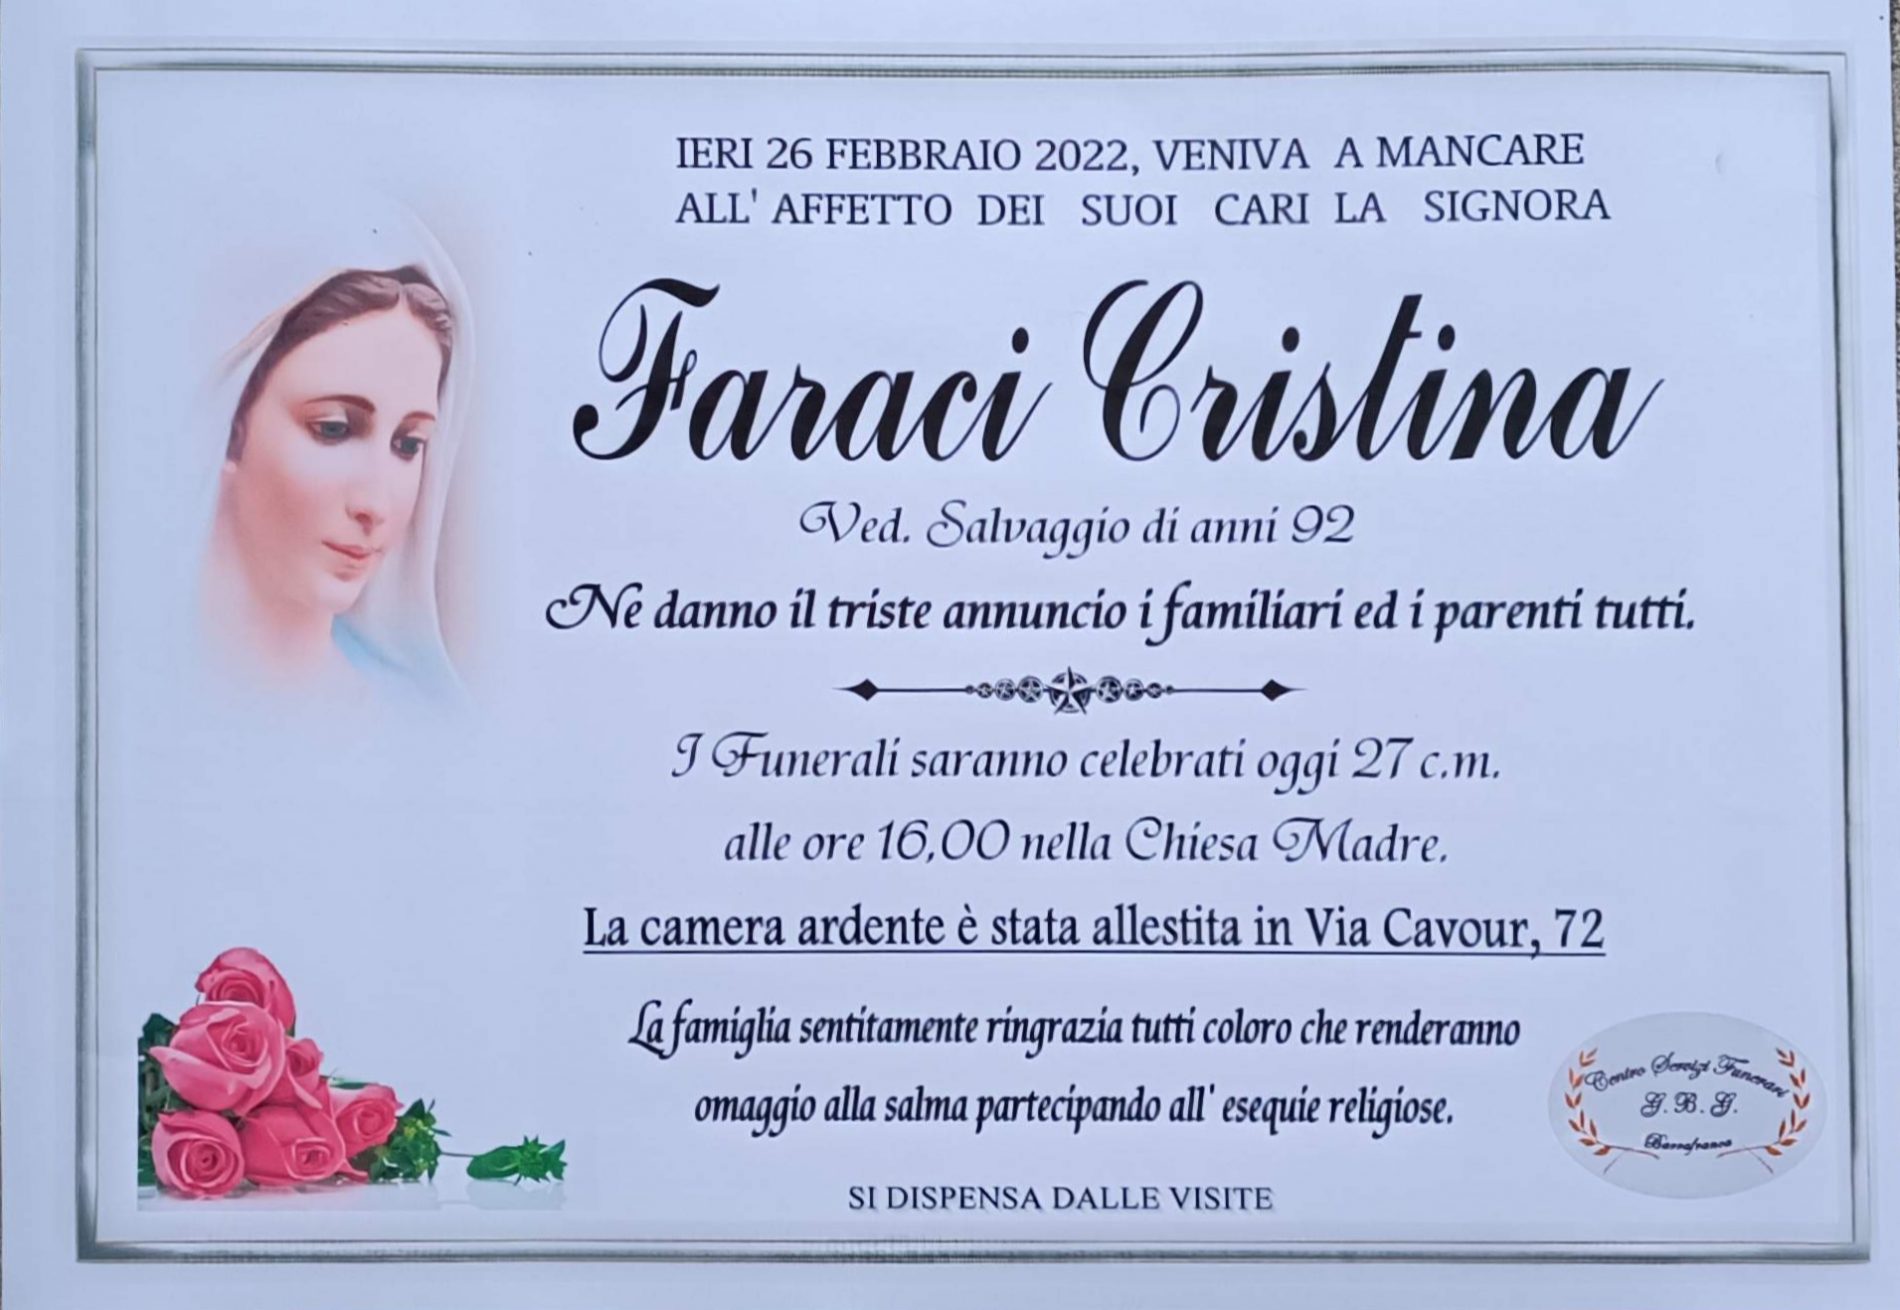 Annuncio servizi funerari agenzia G.B.G. signora Faraci Cristina ved. Salvaggio di anni 92